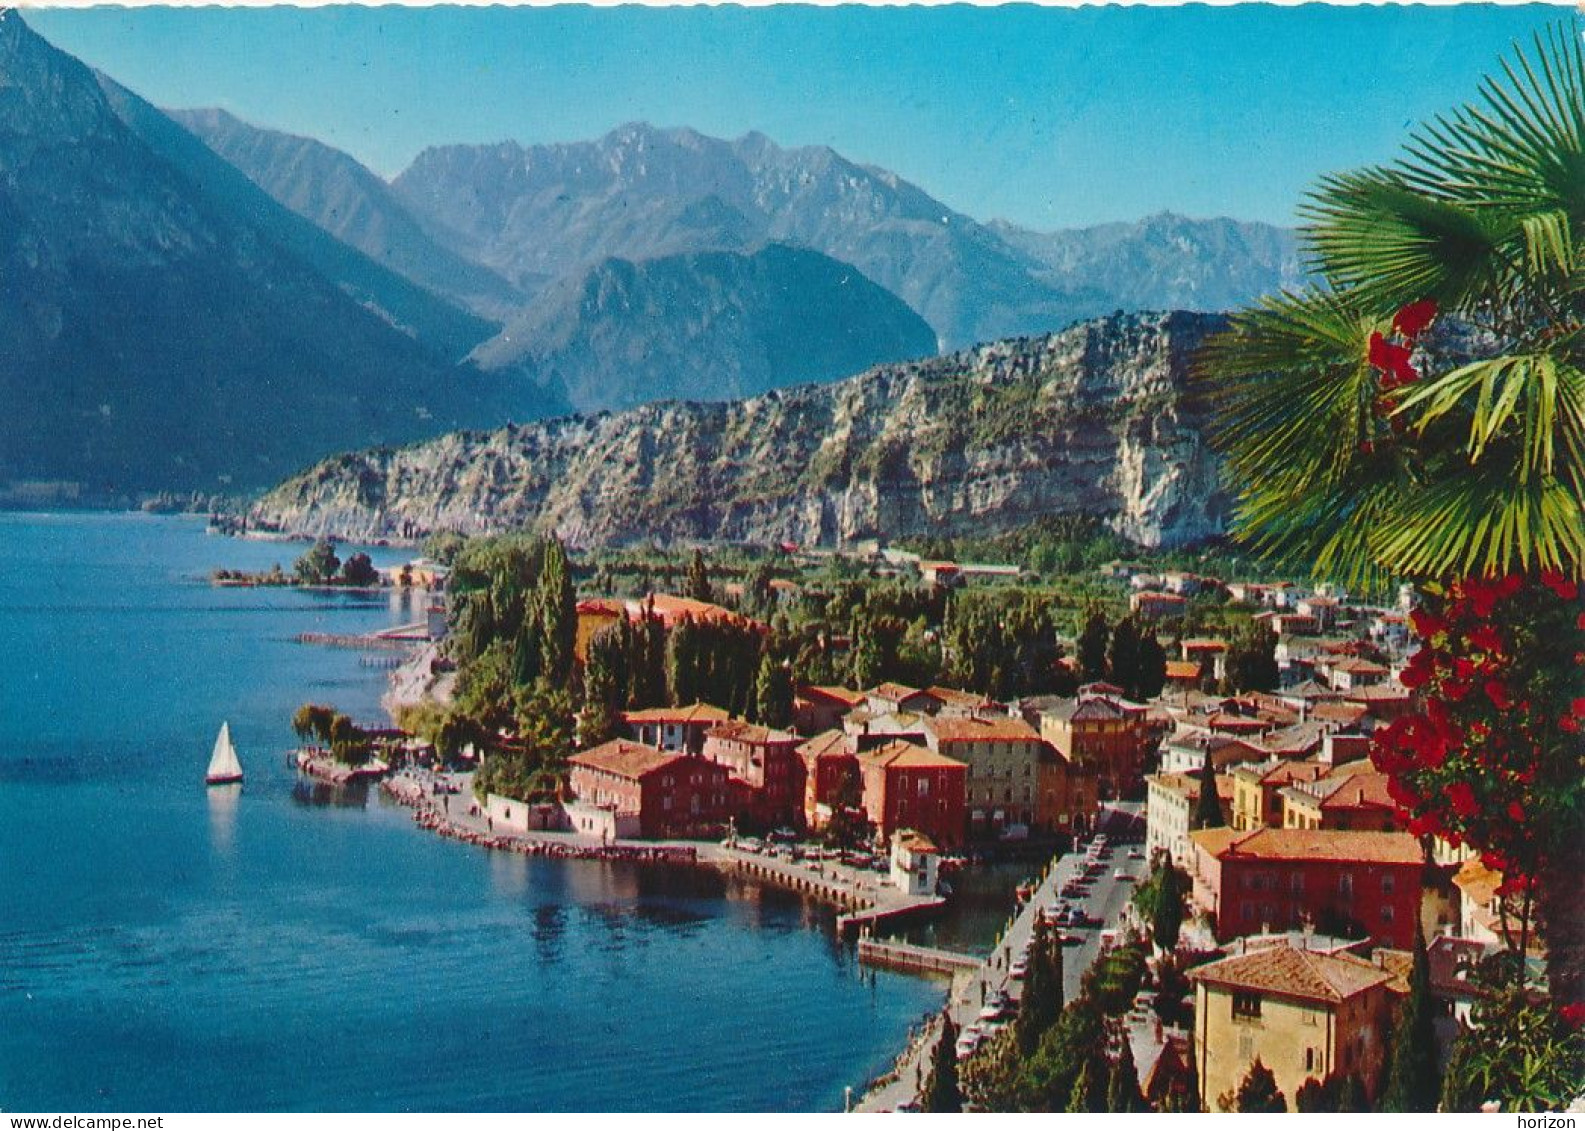 g.934   Lago di Garda - TORBOLE - Trento - Lotto di 16 cartoline f.to grande